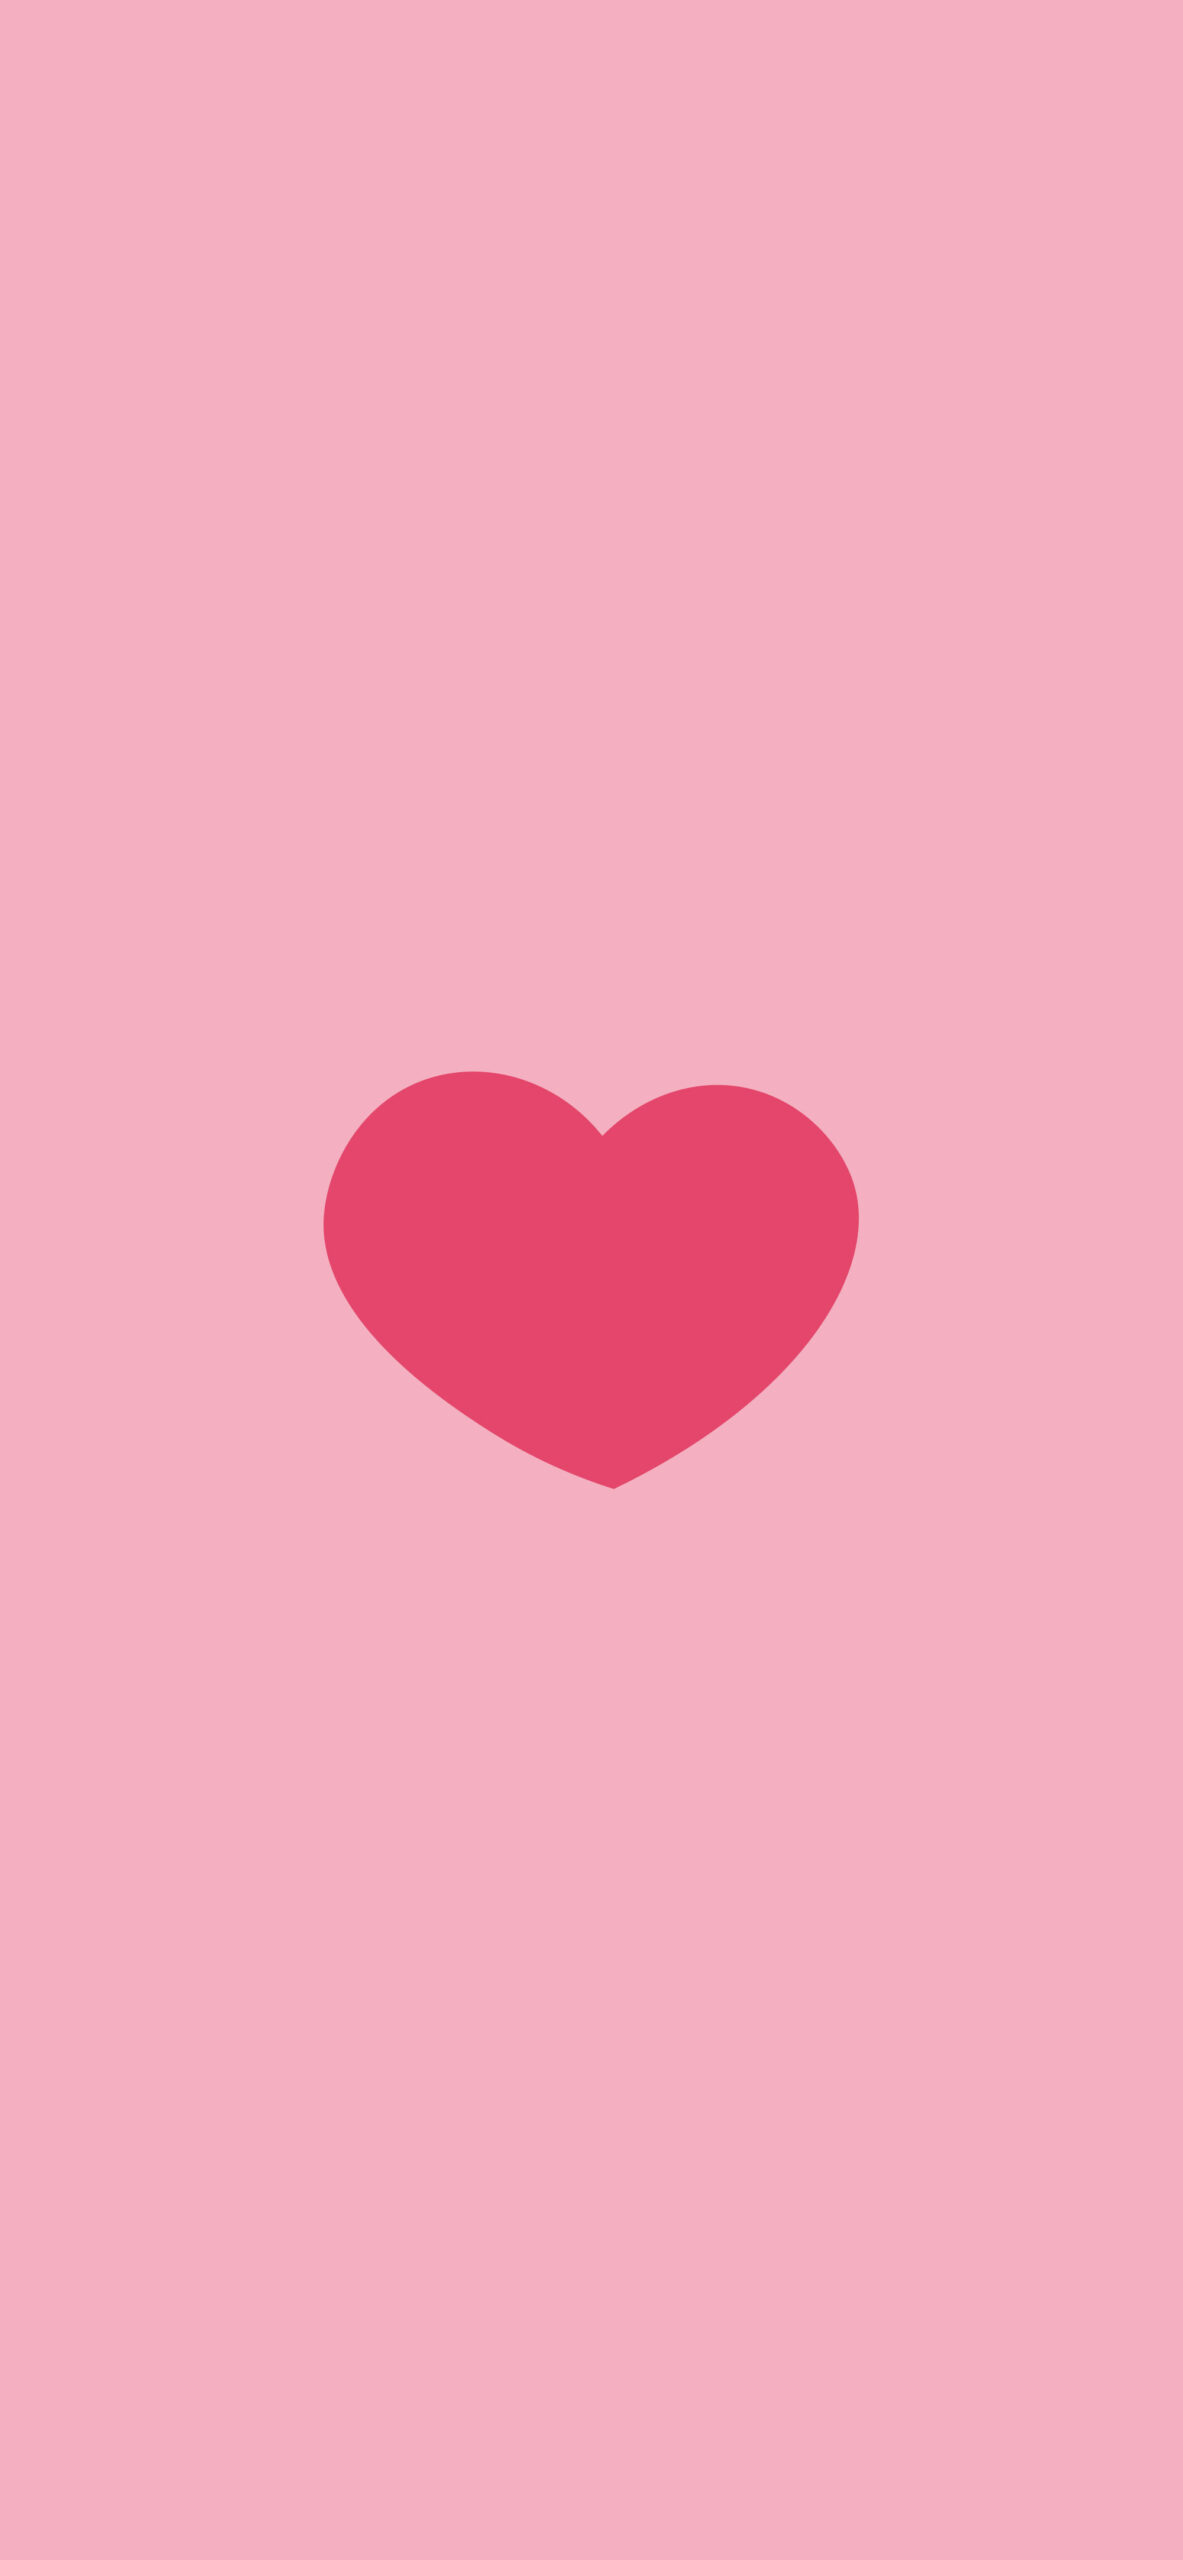 Love Hearts Pattern Pink Wallpaper - Aesthetic Heart Wallpaper 4k